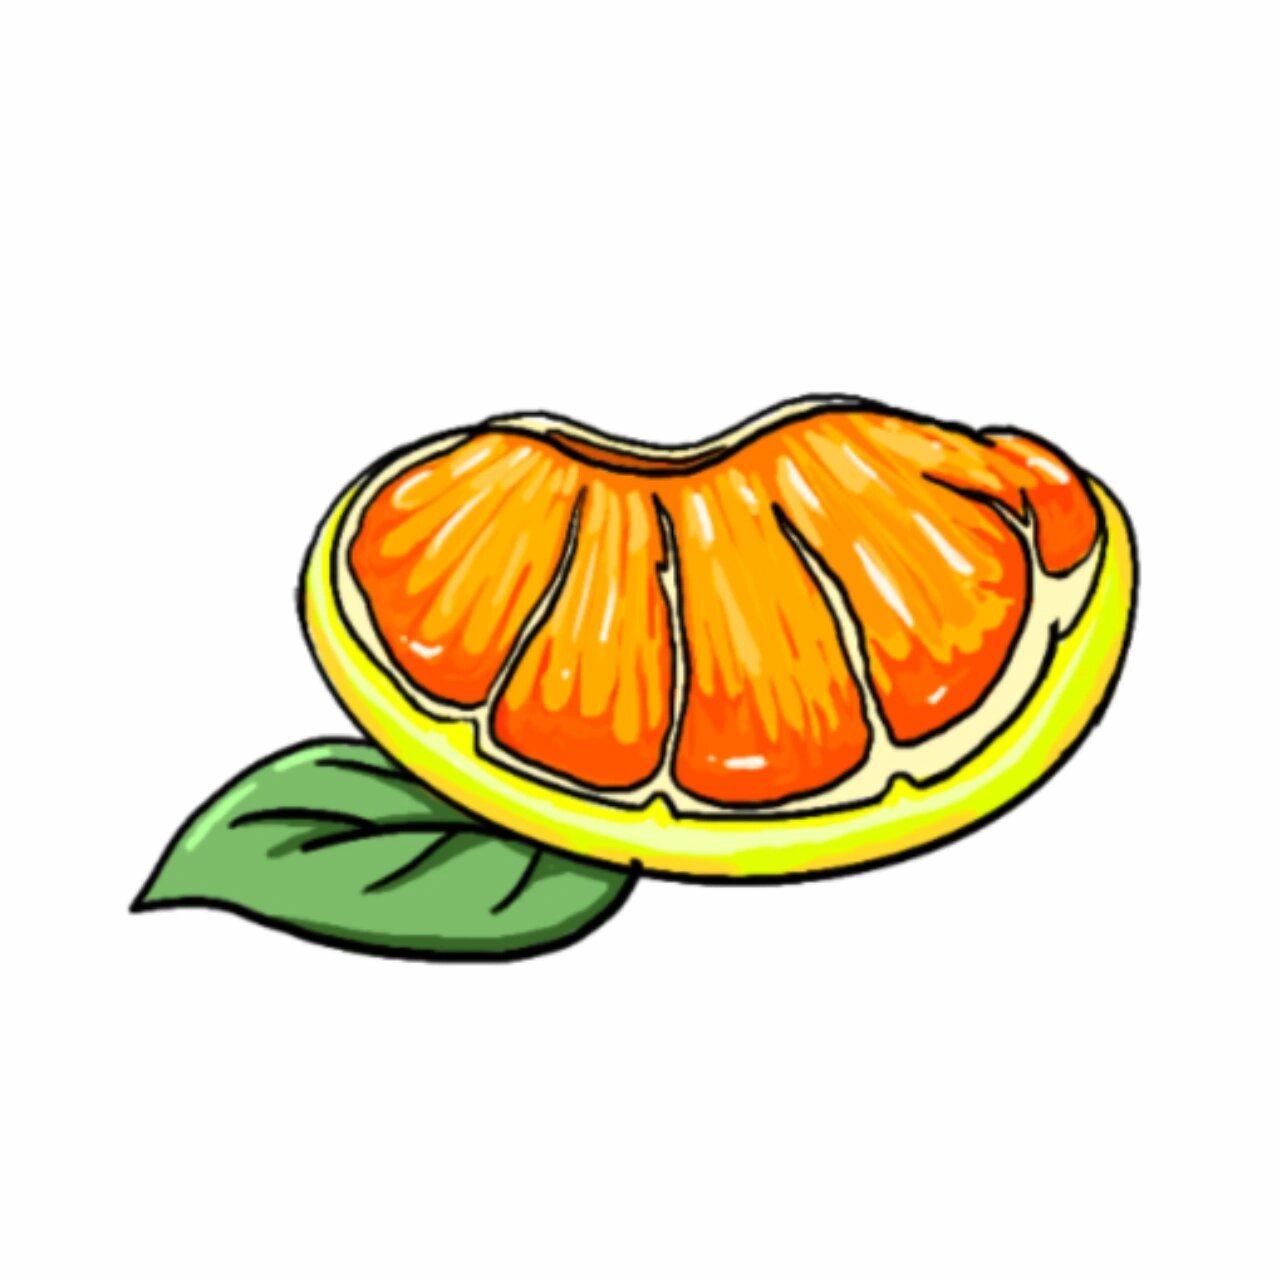 是一种极具营养价值的水果,今天给小伙伴们带来的插画就是以柚子为